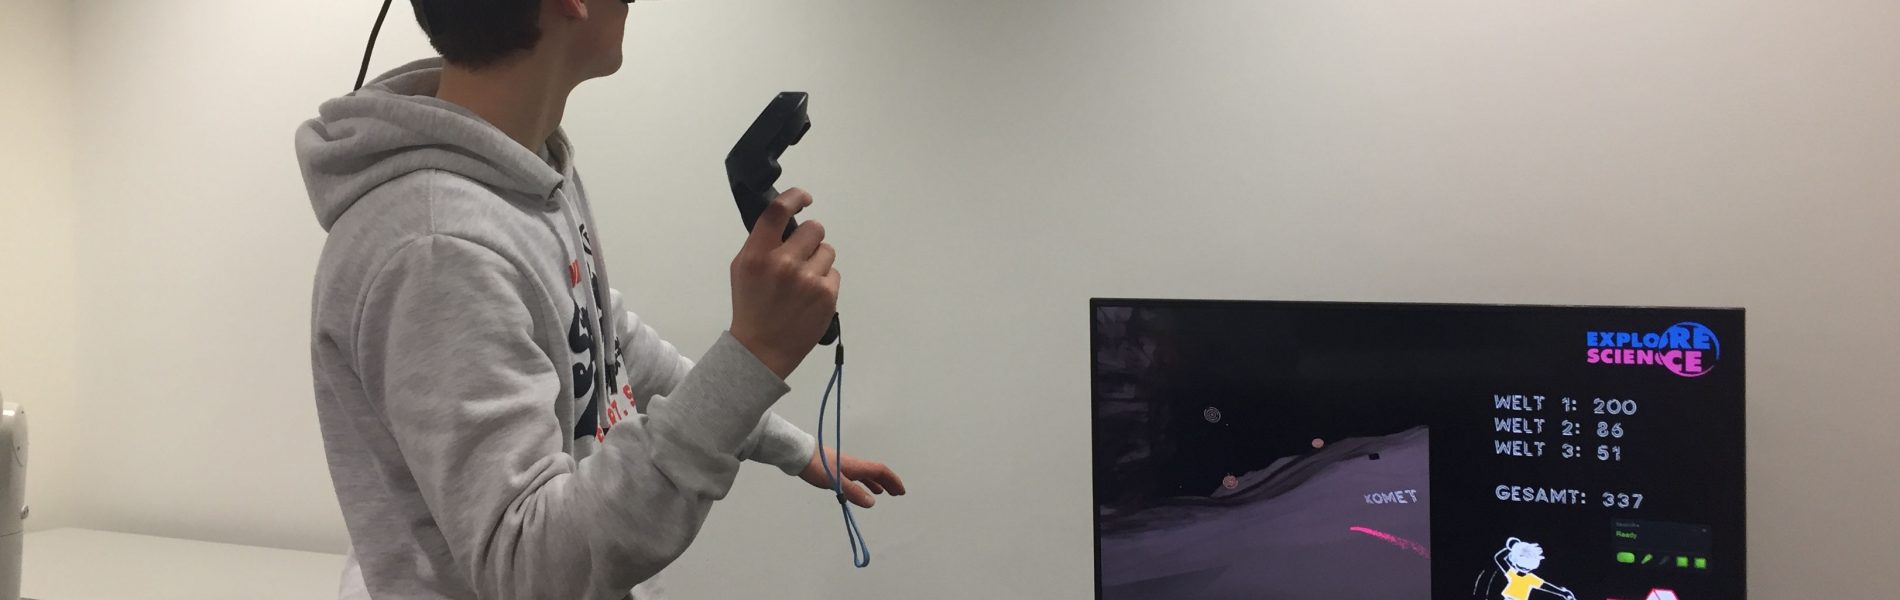 Ein Mann trägt eine Virtual Reality Brille und hat einen Controller in der Hand. Er spielt offensichtlich ein Spiel, wie man auf dem Bildschirm vor ihm sehen kann.